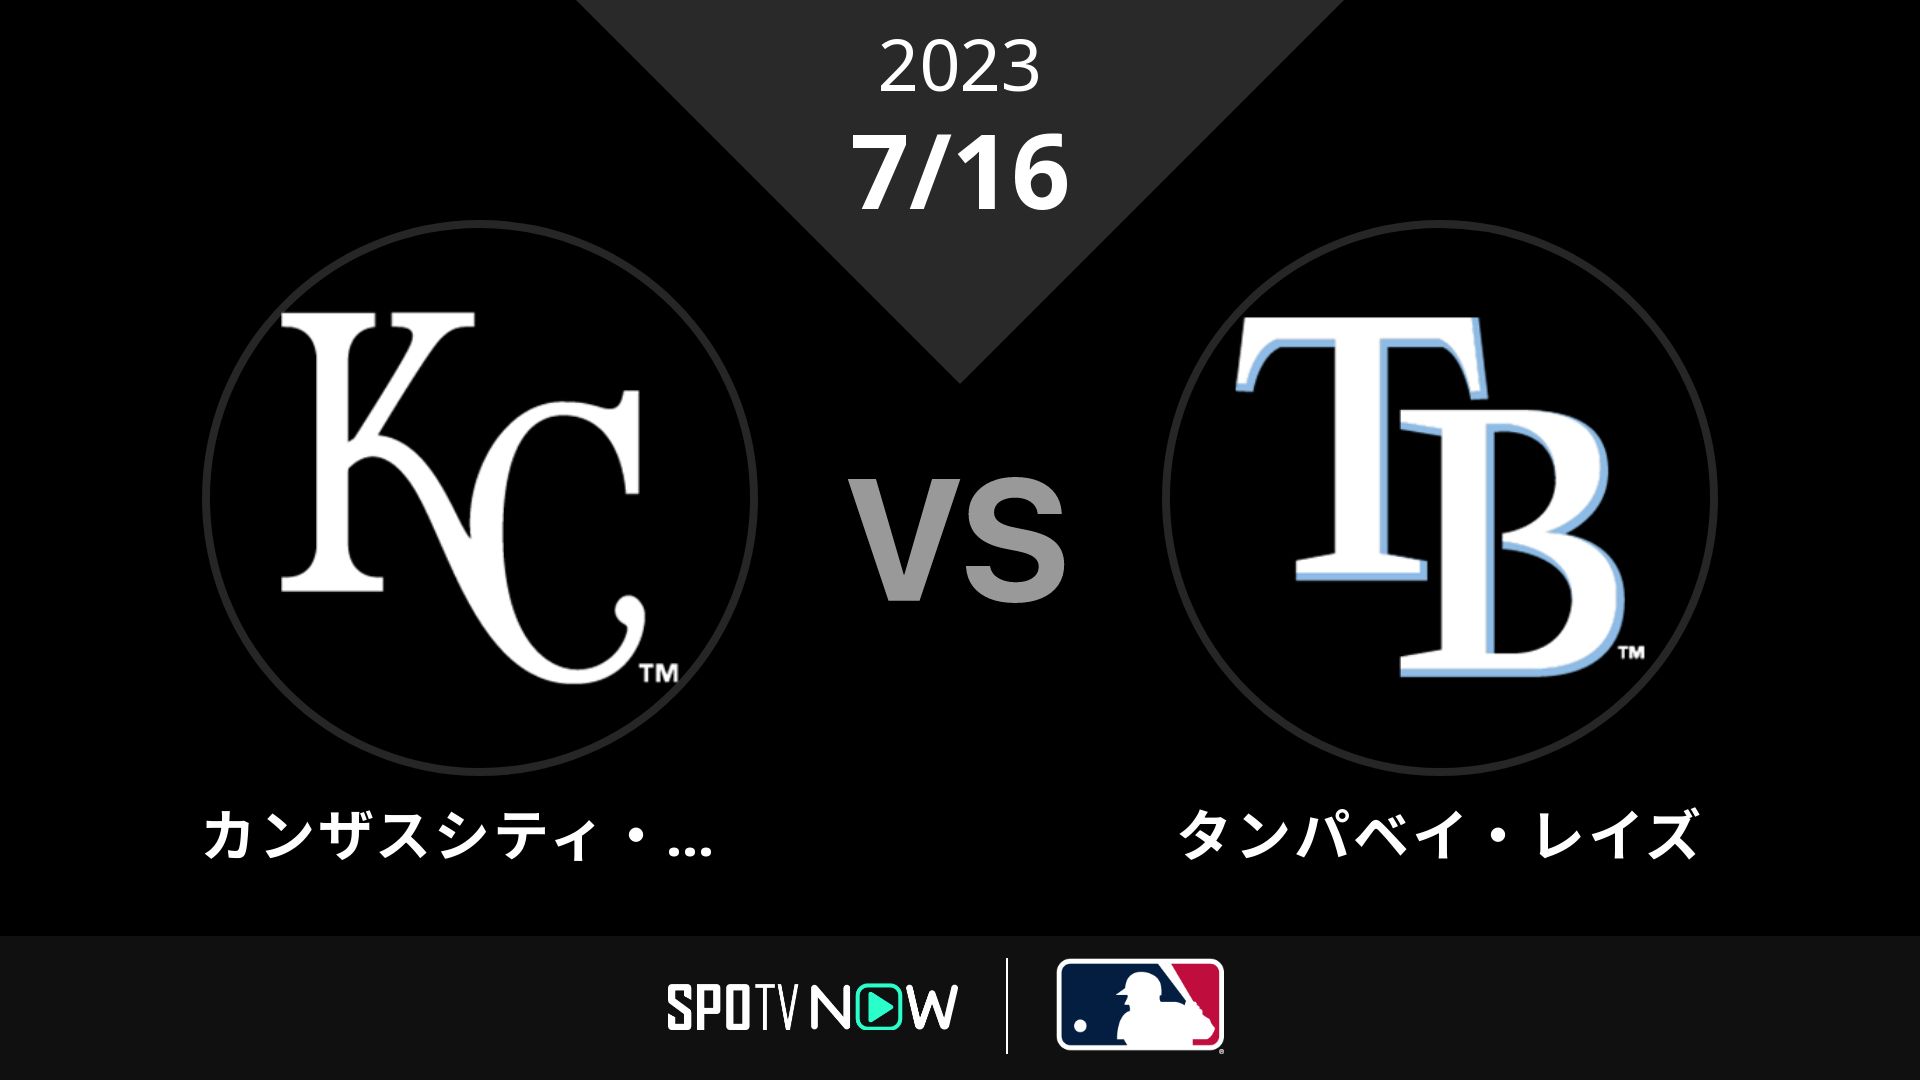 2023/7/16 ロイヤルズ vs レイズ [MLB]